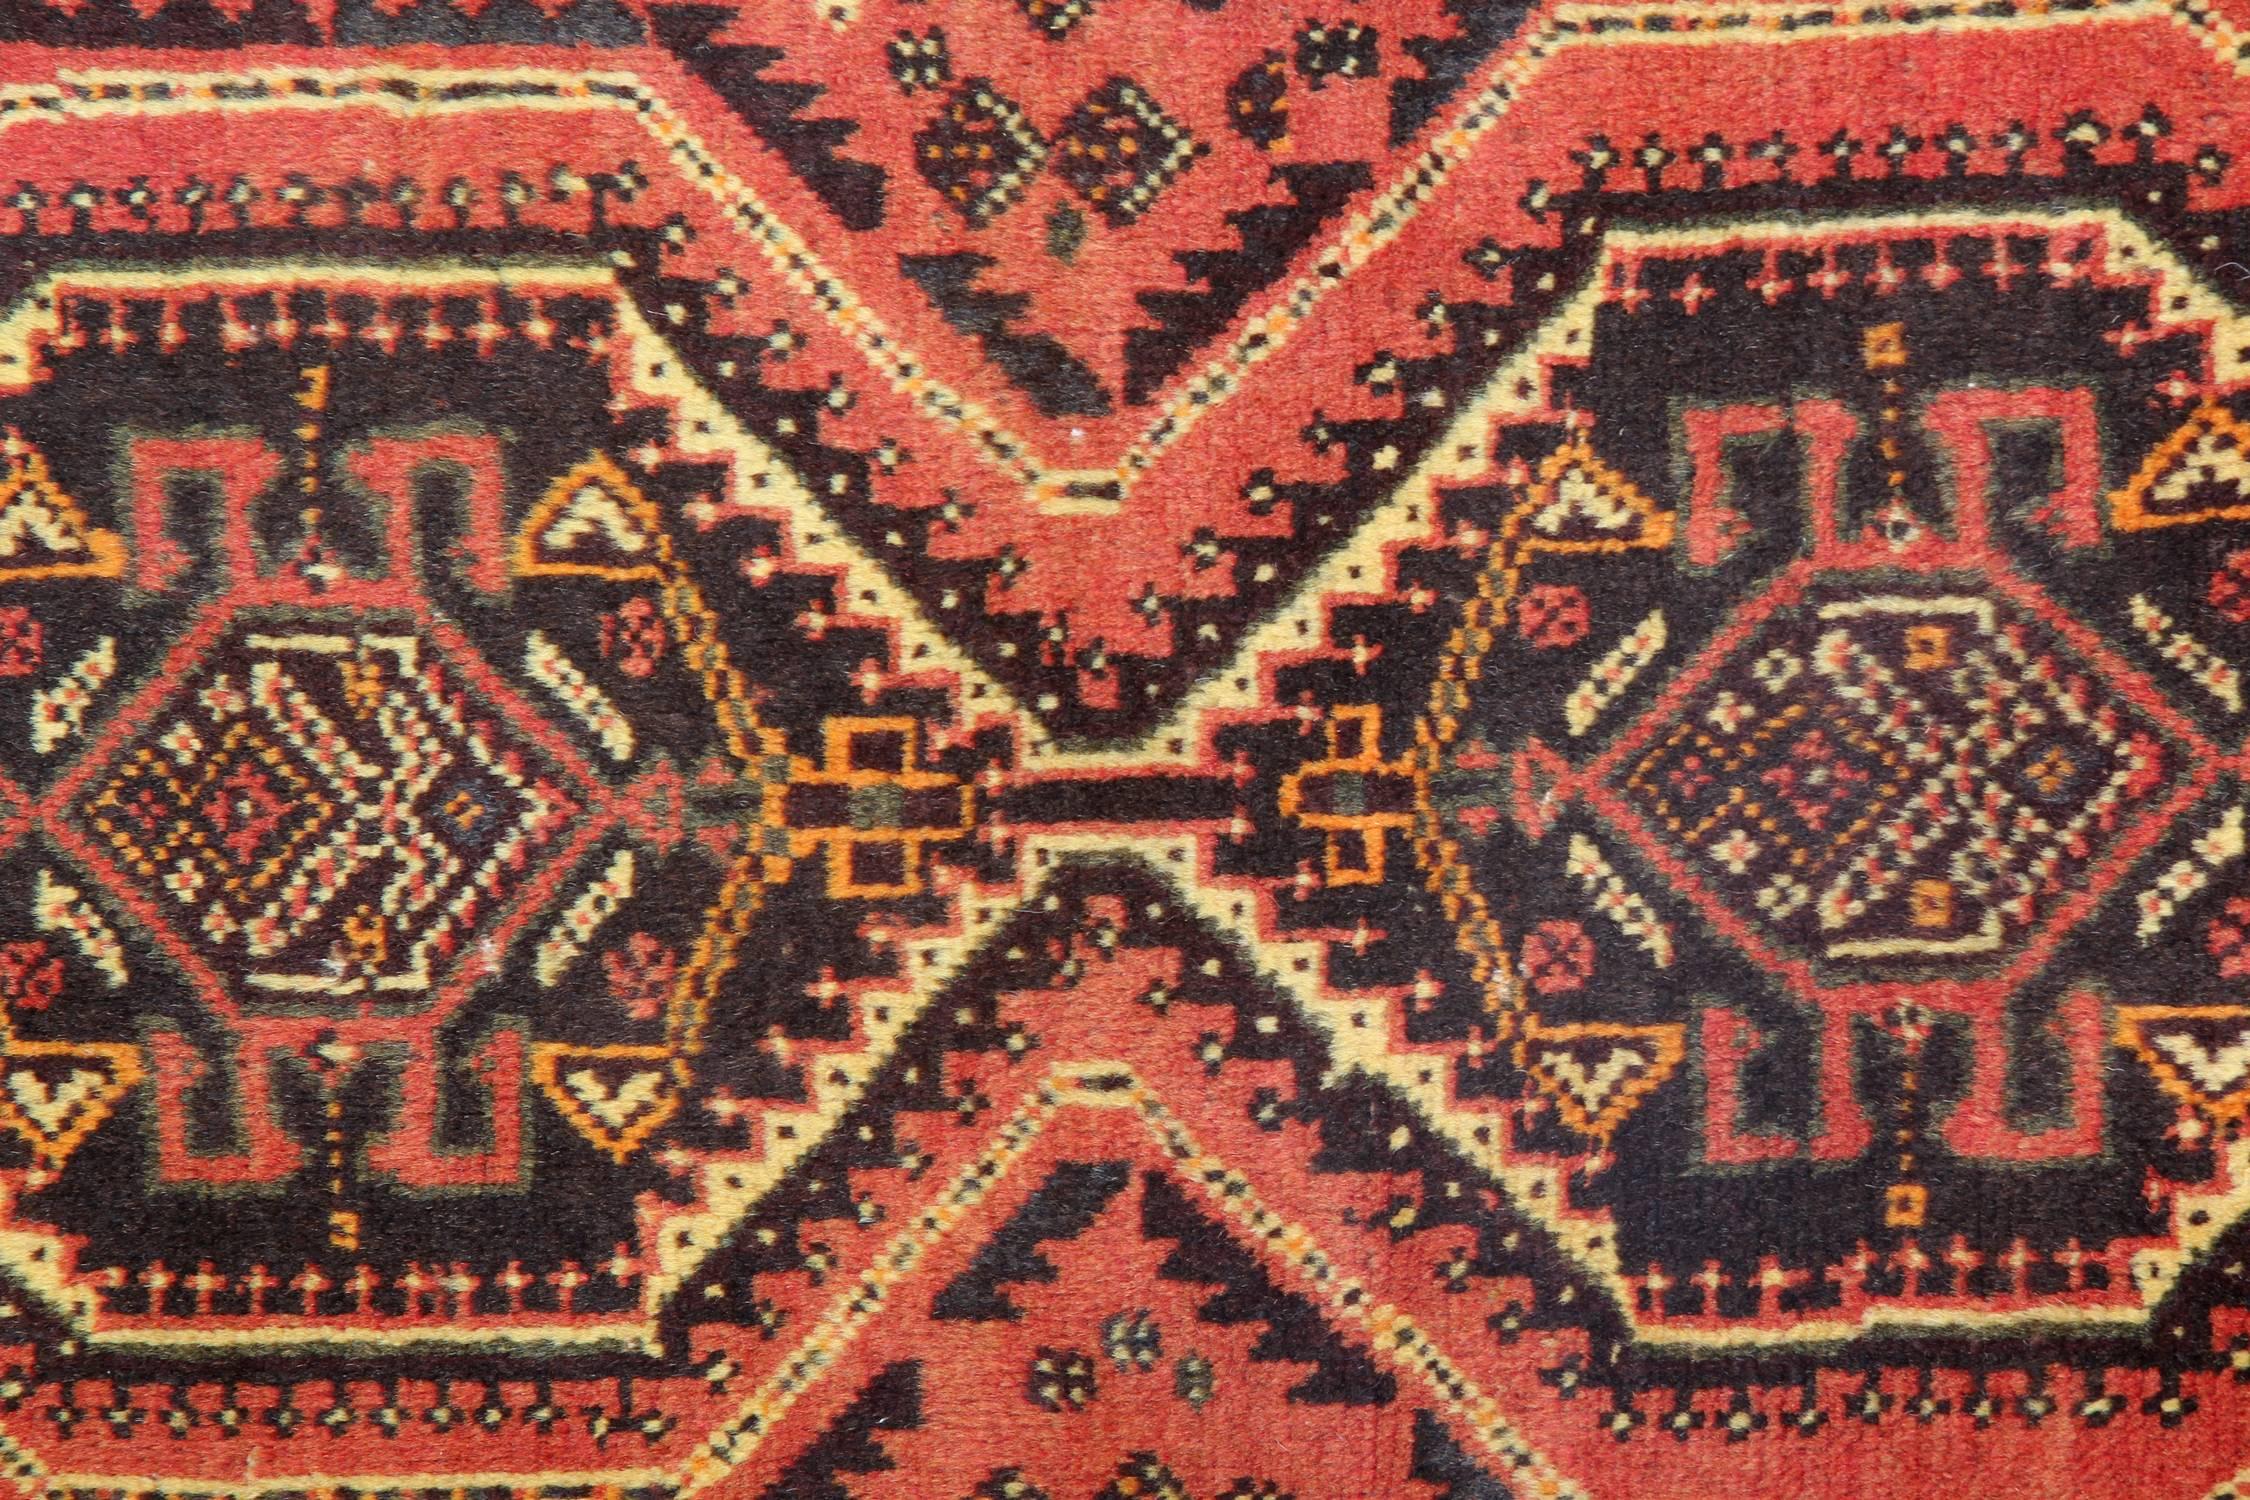 Turkish Vintage Oriental Tribal Rug, Geometric Handmade Wool Carpet Area Rug For Sale